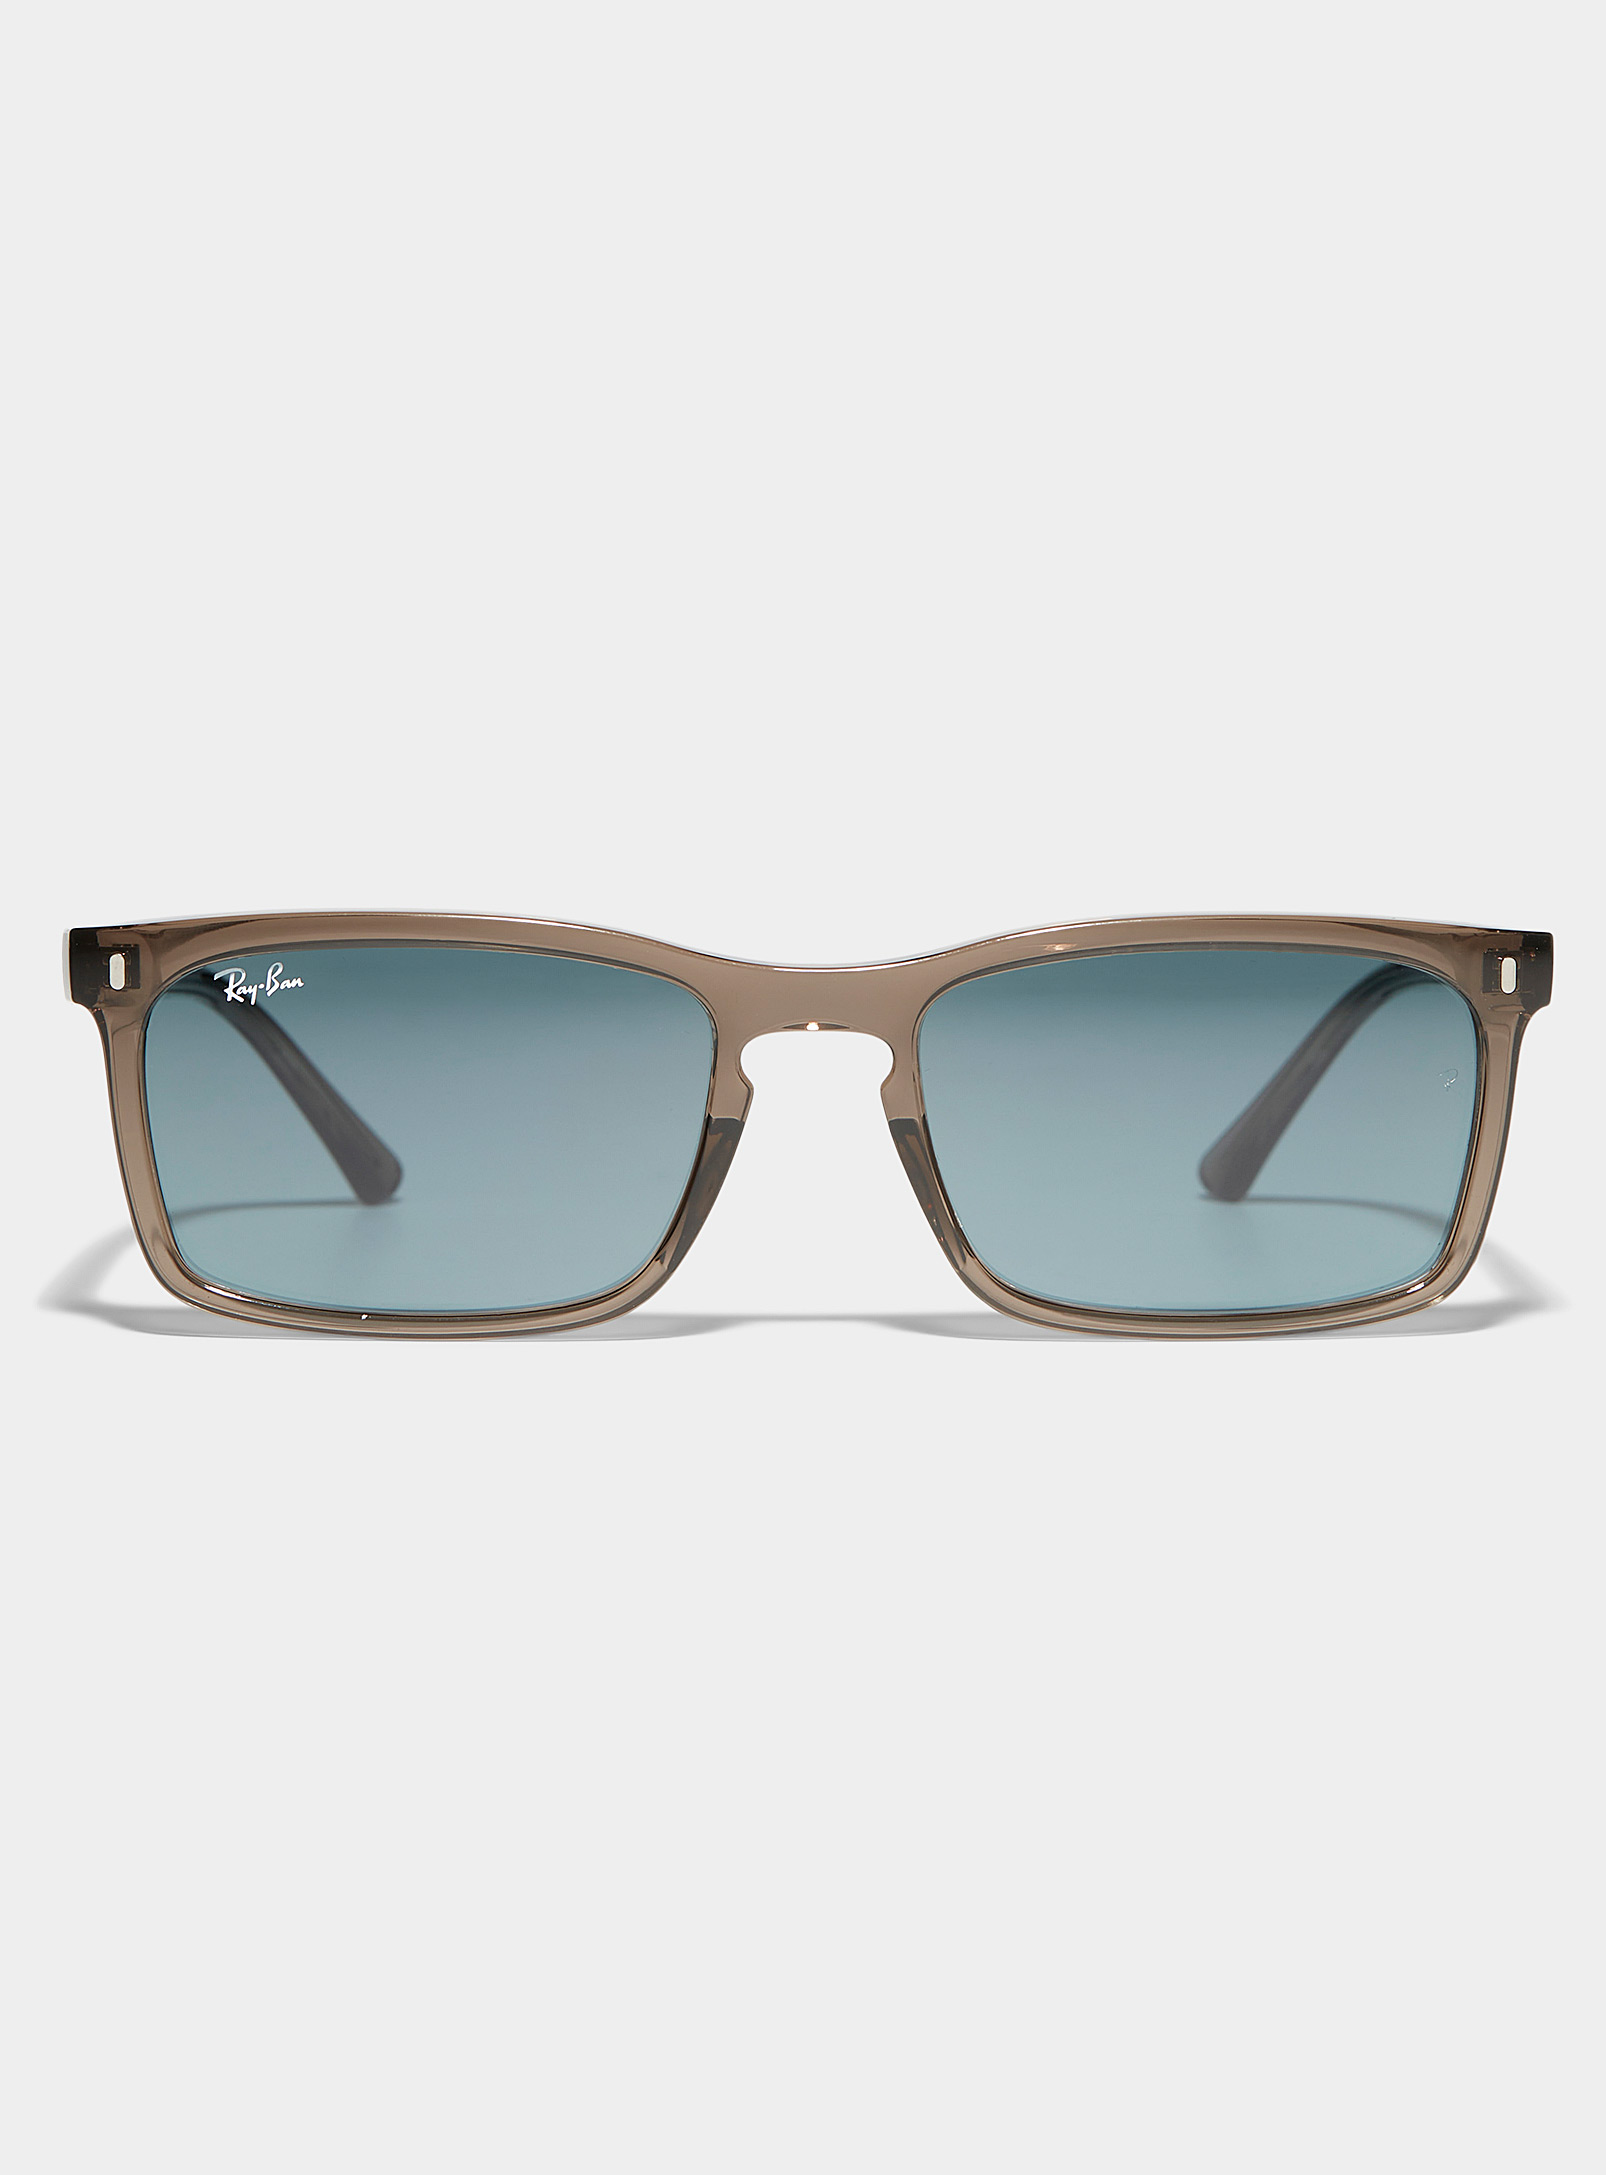 Ray-Ban - Les lunettes de soleil rectangulaires translucides brunes